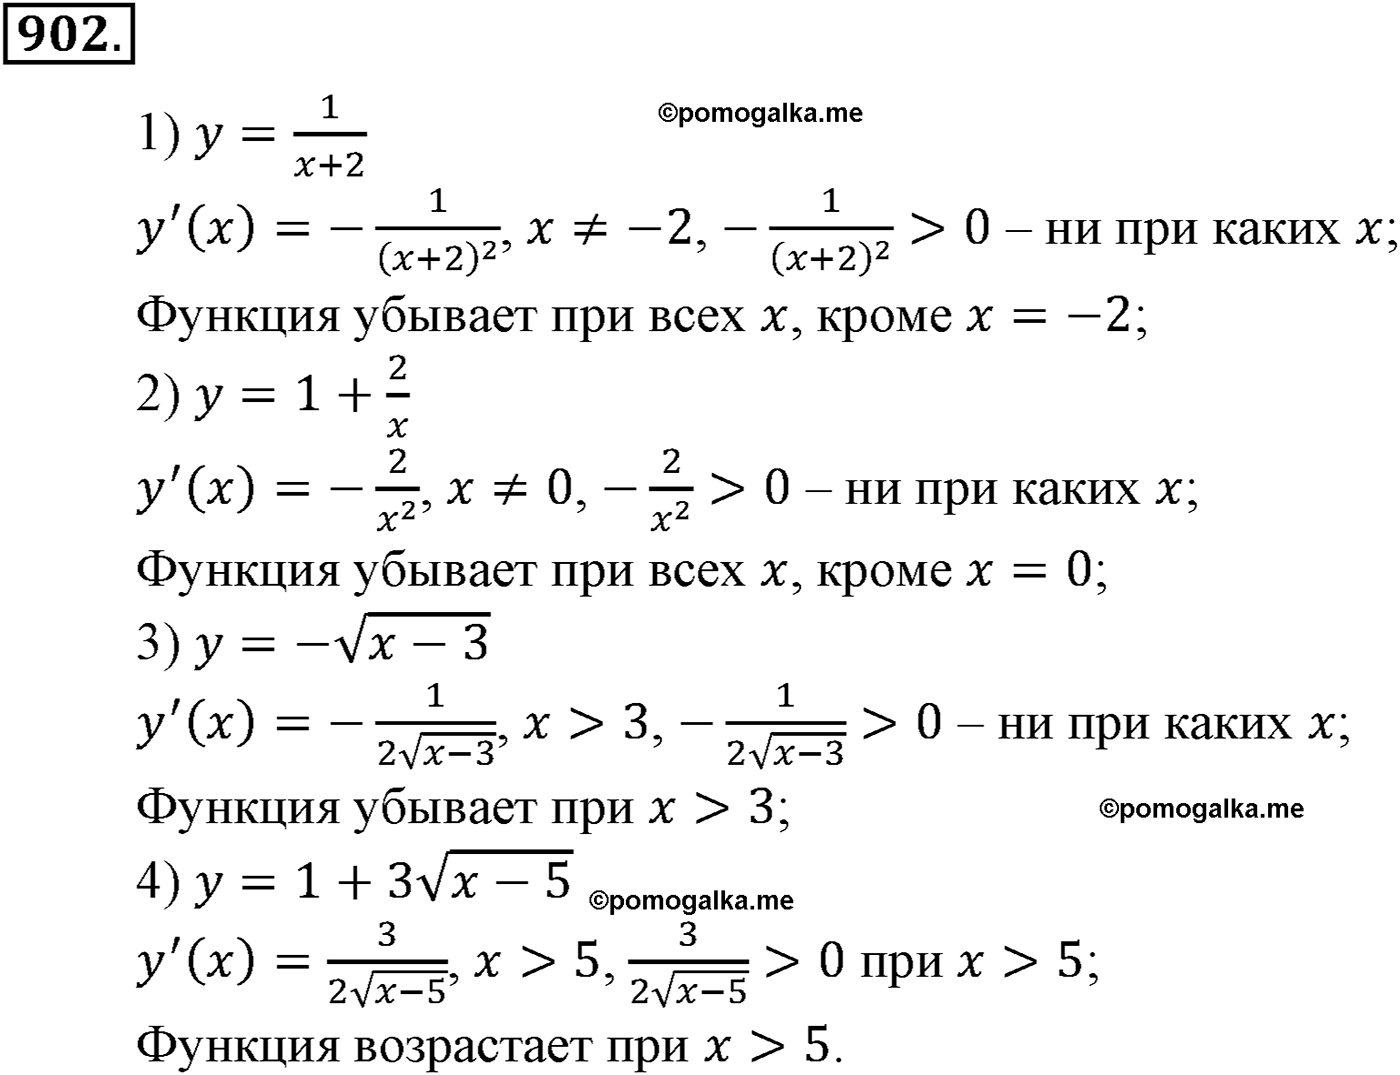 разбор задачи №902 по алгебре за 10-11 класс из учебника Алимова, Колягина